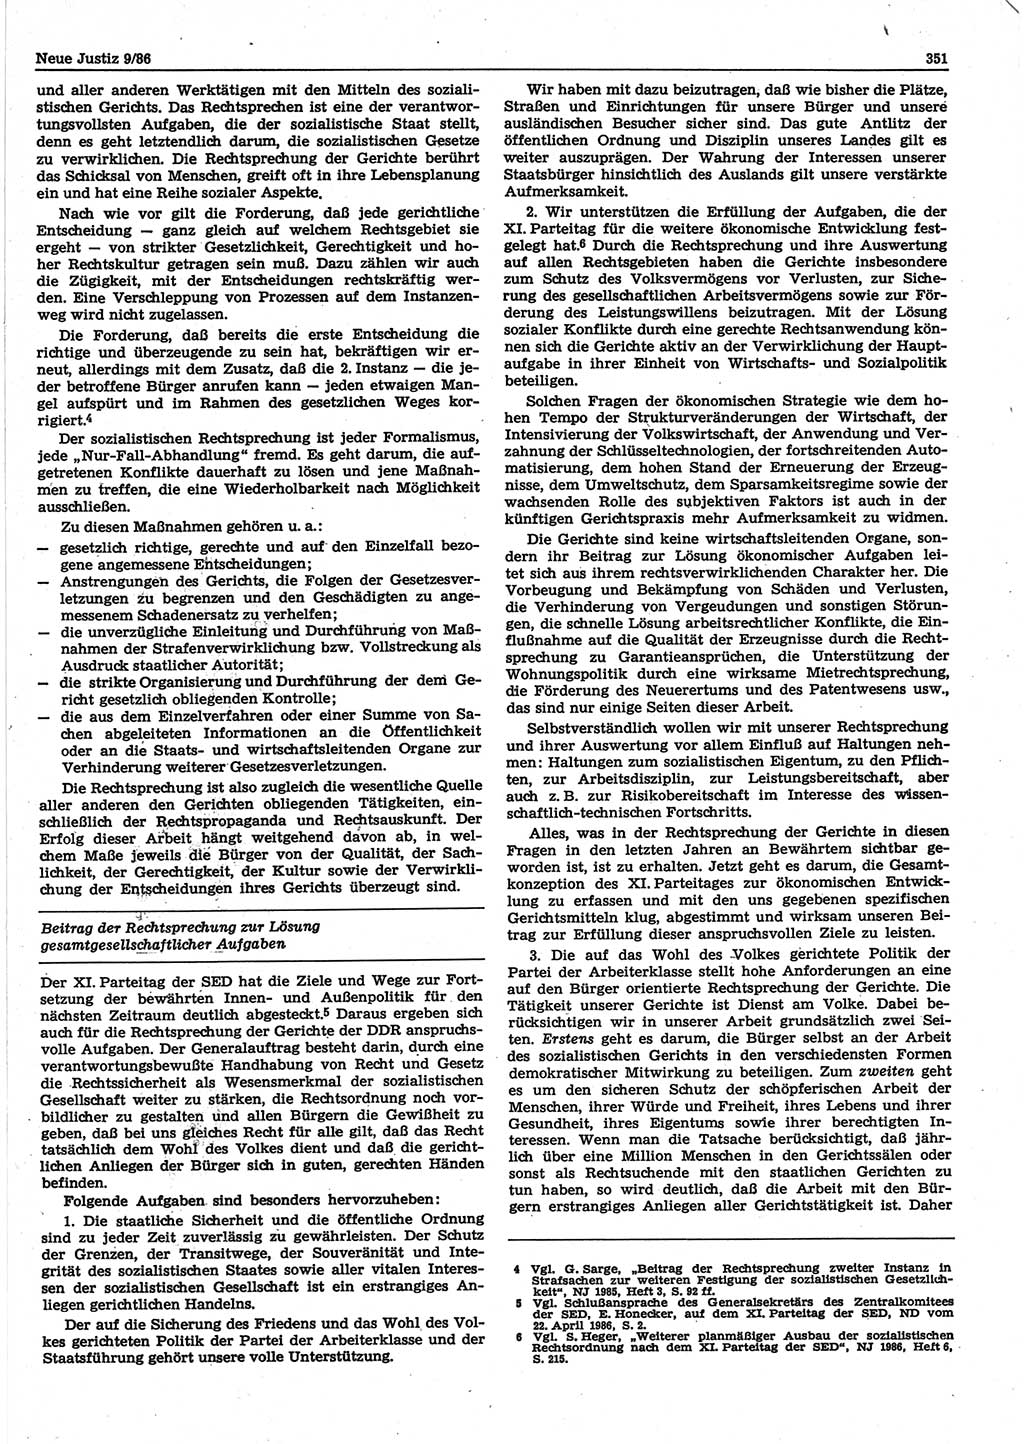 Neue Justiz (NJ), Zeitschrift für sozialistisches Recht und Gesetzlichkeit [Deutsche Demokratische Republik (DDR)], 40. Jahrgang 1986, Seite 351 (NJ DDR 1986, S. 351)